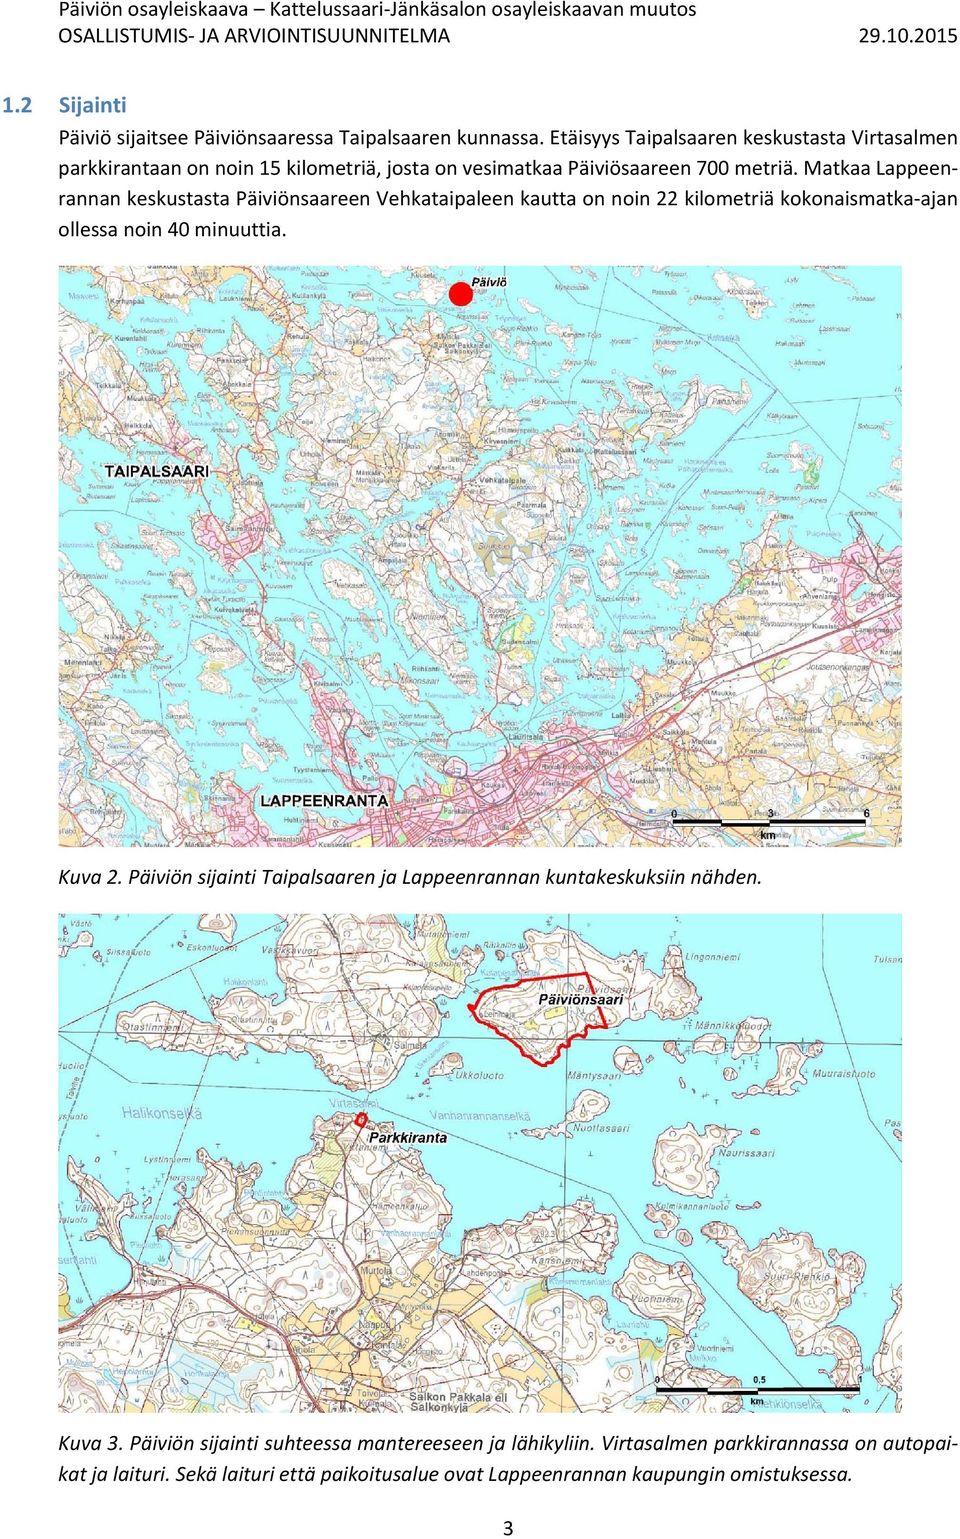 Matkaa Lappeenrannan keskustasta Päiviönsaareen Vehkataipaleen kautta on noin 22 kilometriä kokonaismatka ajan ollessa noin 40 minuuttia. Kuva 2.